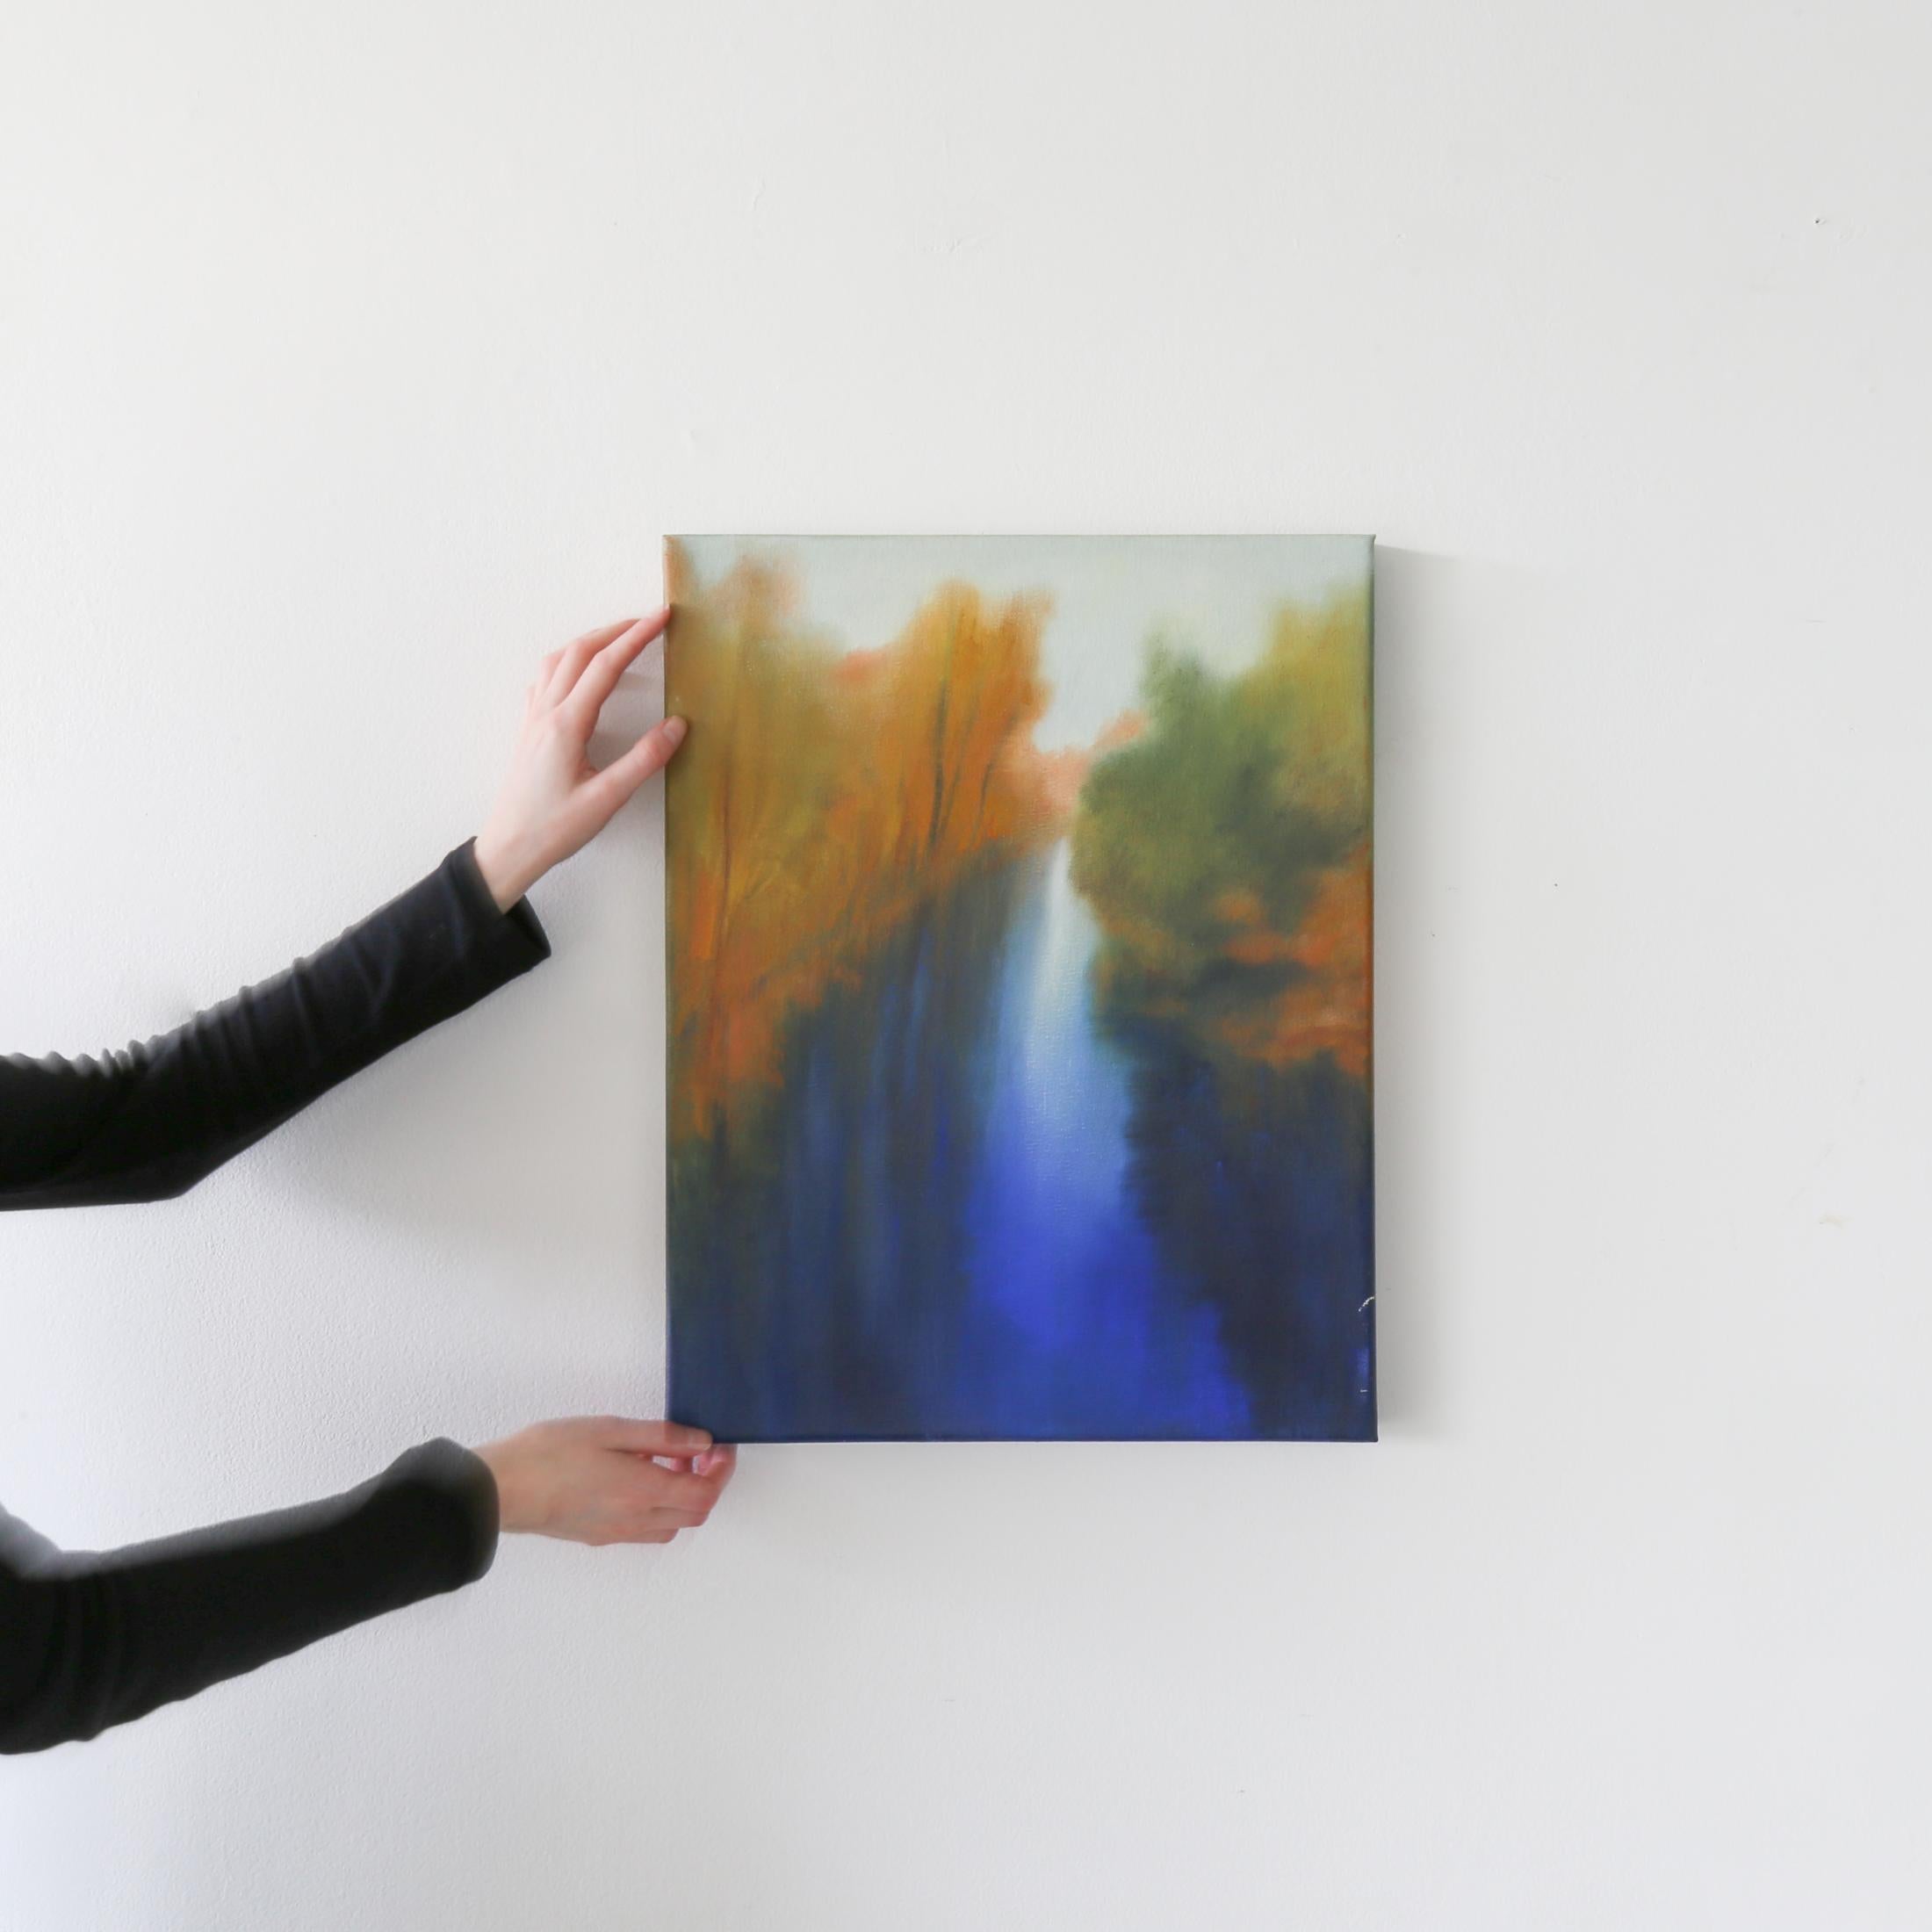 Morning Reflections des Künstlers Doug Freed ist eine blaue, orangefarbene, grüne und weiße zeitgenössische Landschaft in Öl auf Leinwand mit den Maßen 20 x 18 und einem Preis von 1.800 $.

Doug Freed versucht, das mystische Licht einzufangen, das